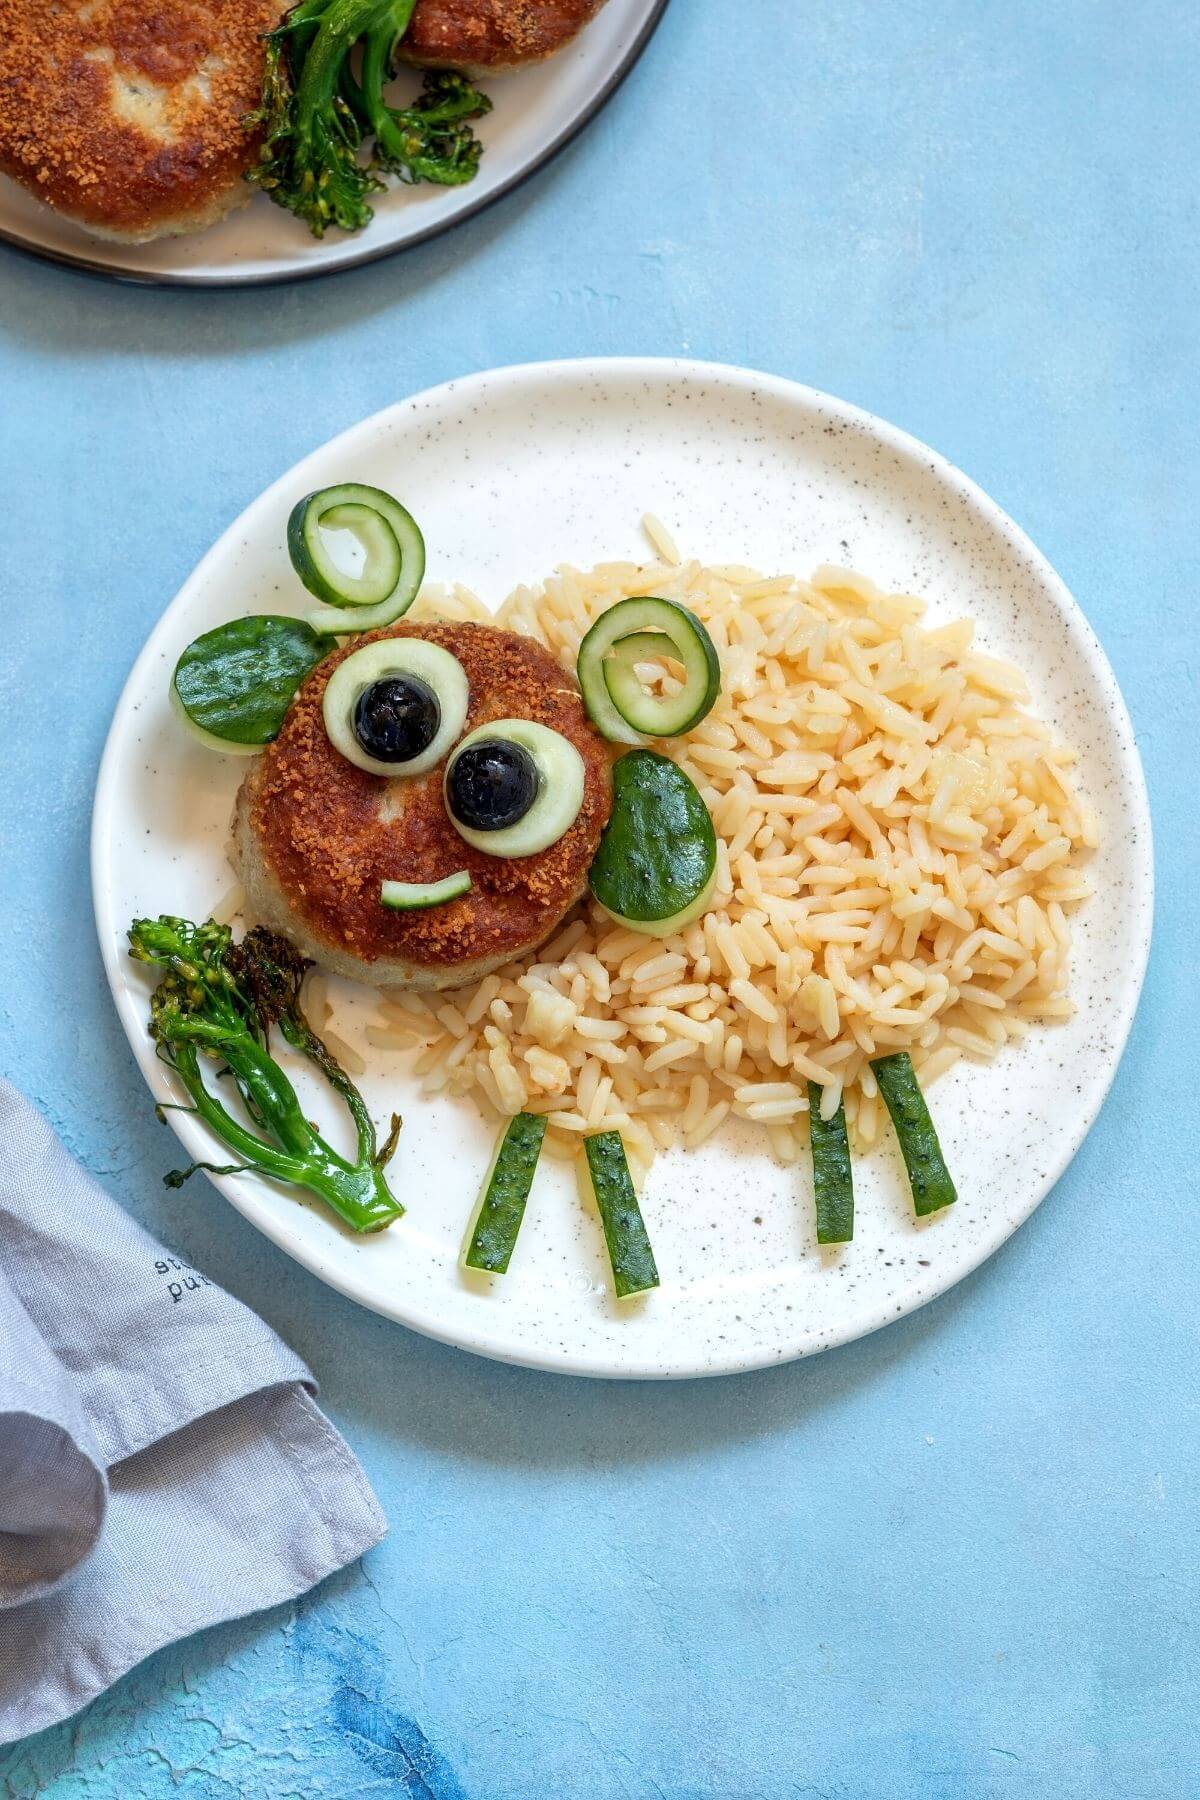 Rice and rissole on a plate shaped like a sheep